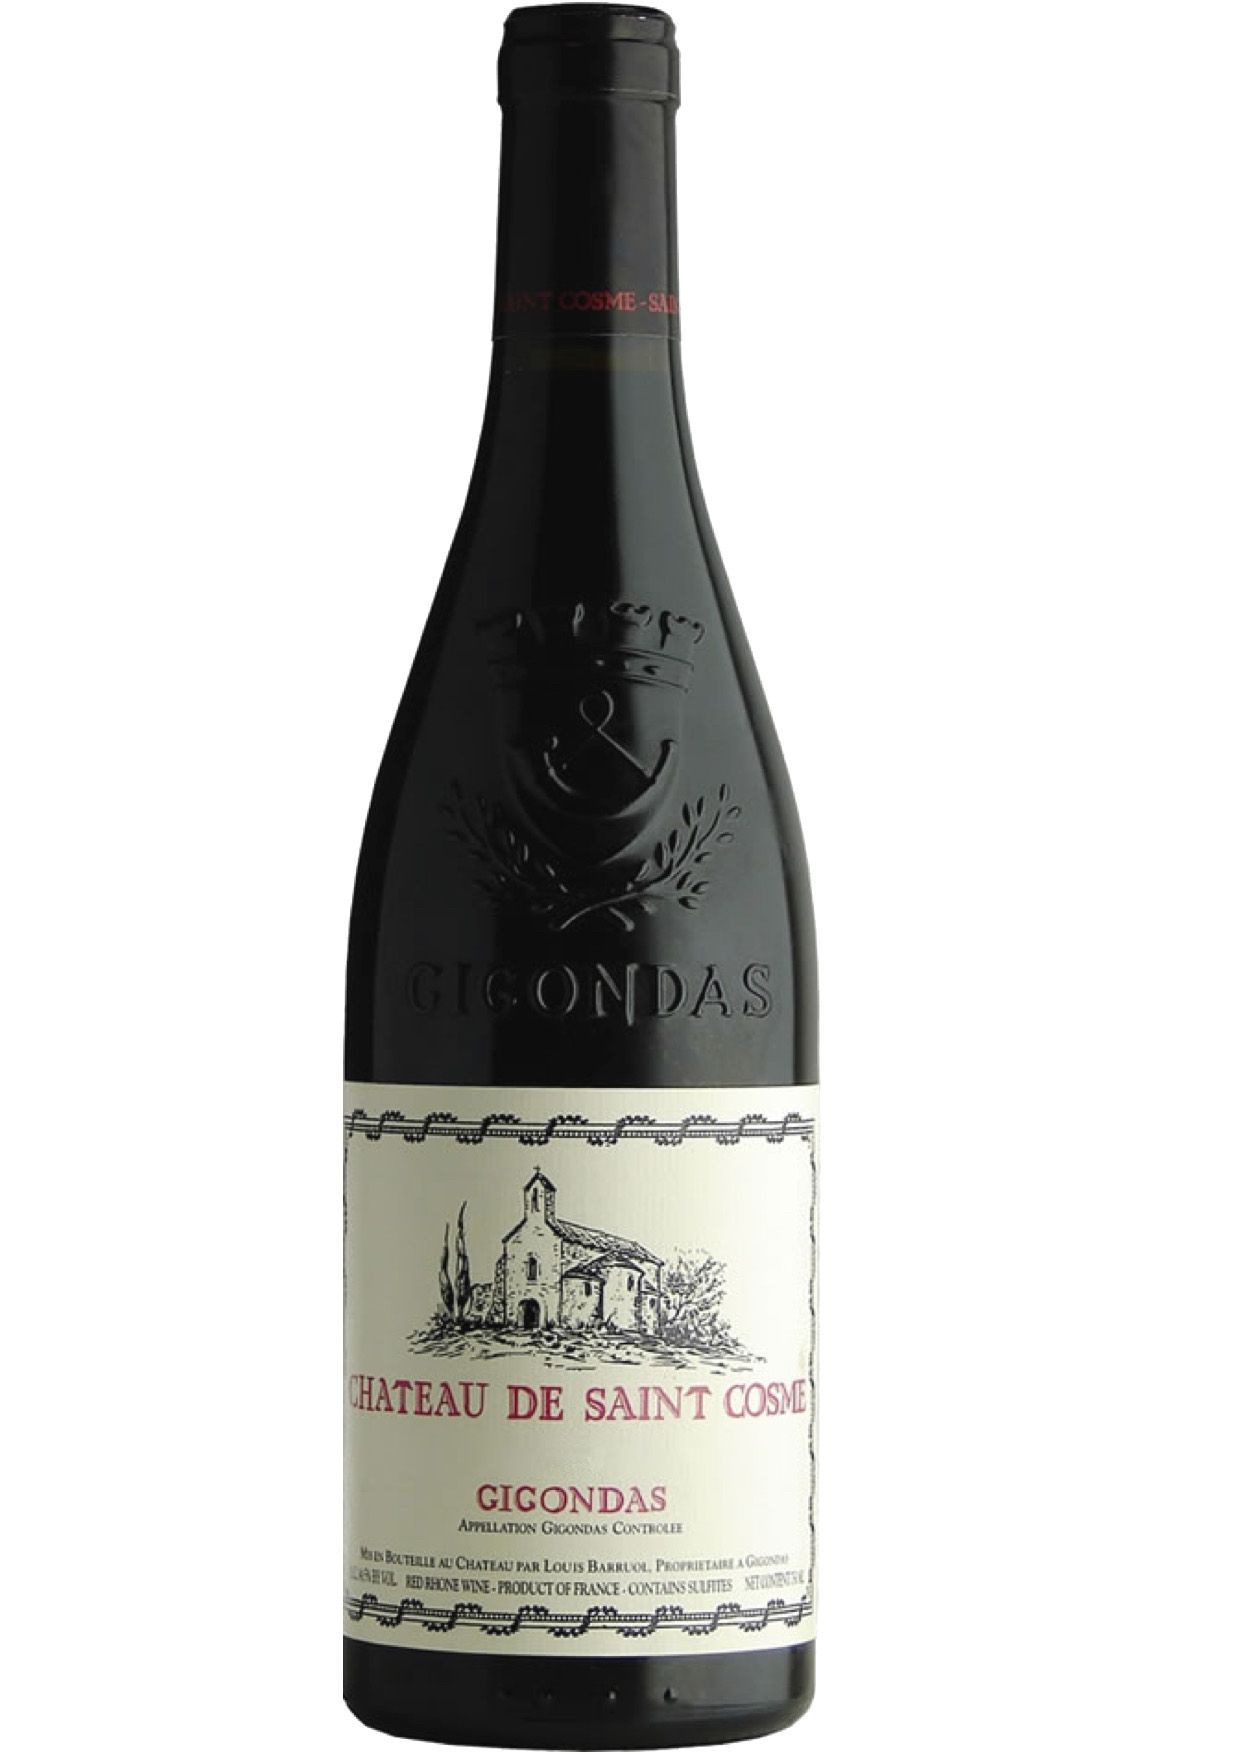 Vinho Chateau de Saint Cosme Le Claux Gigonda 2011